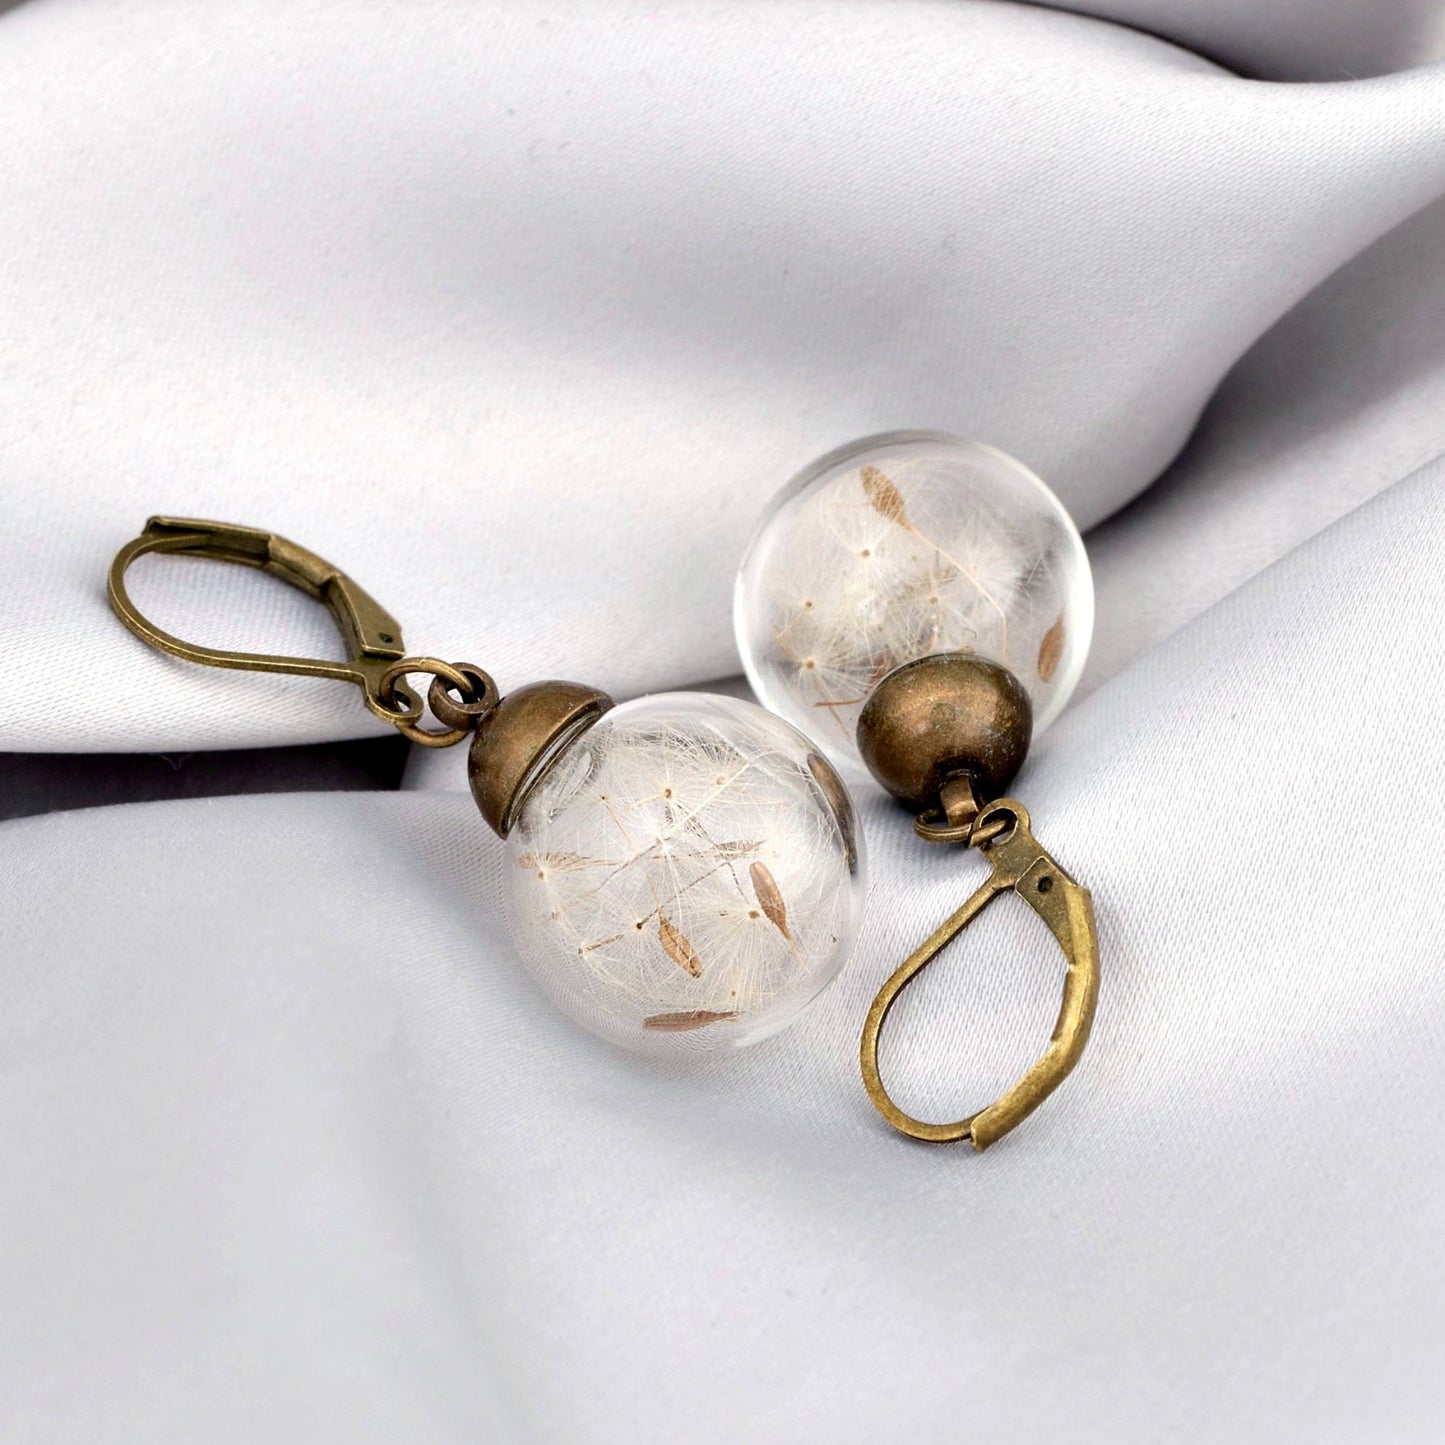 Genuine Pustblumen Earrings - Bronze Earrings with real dandelion seeds - vinohr-11